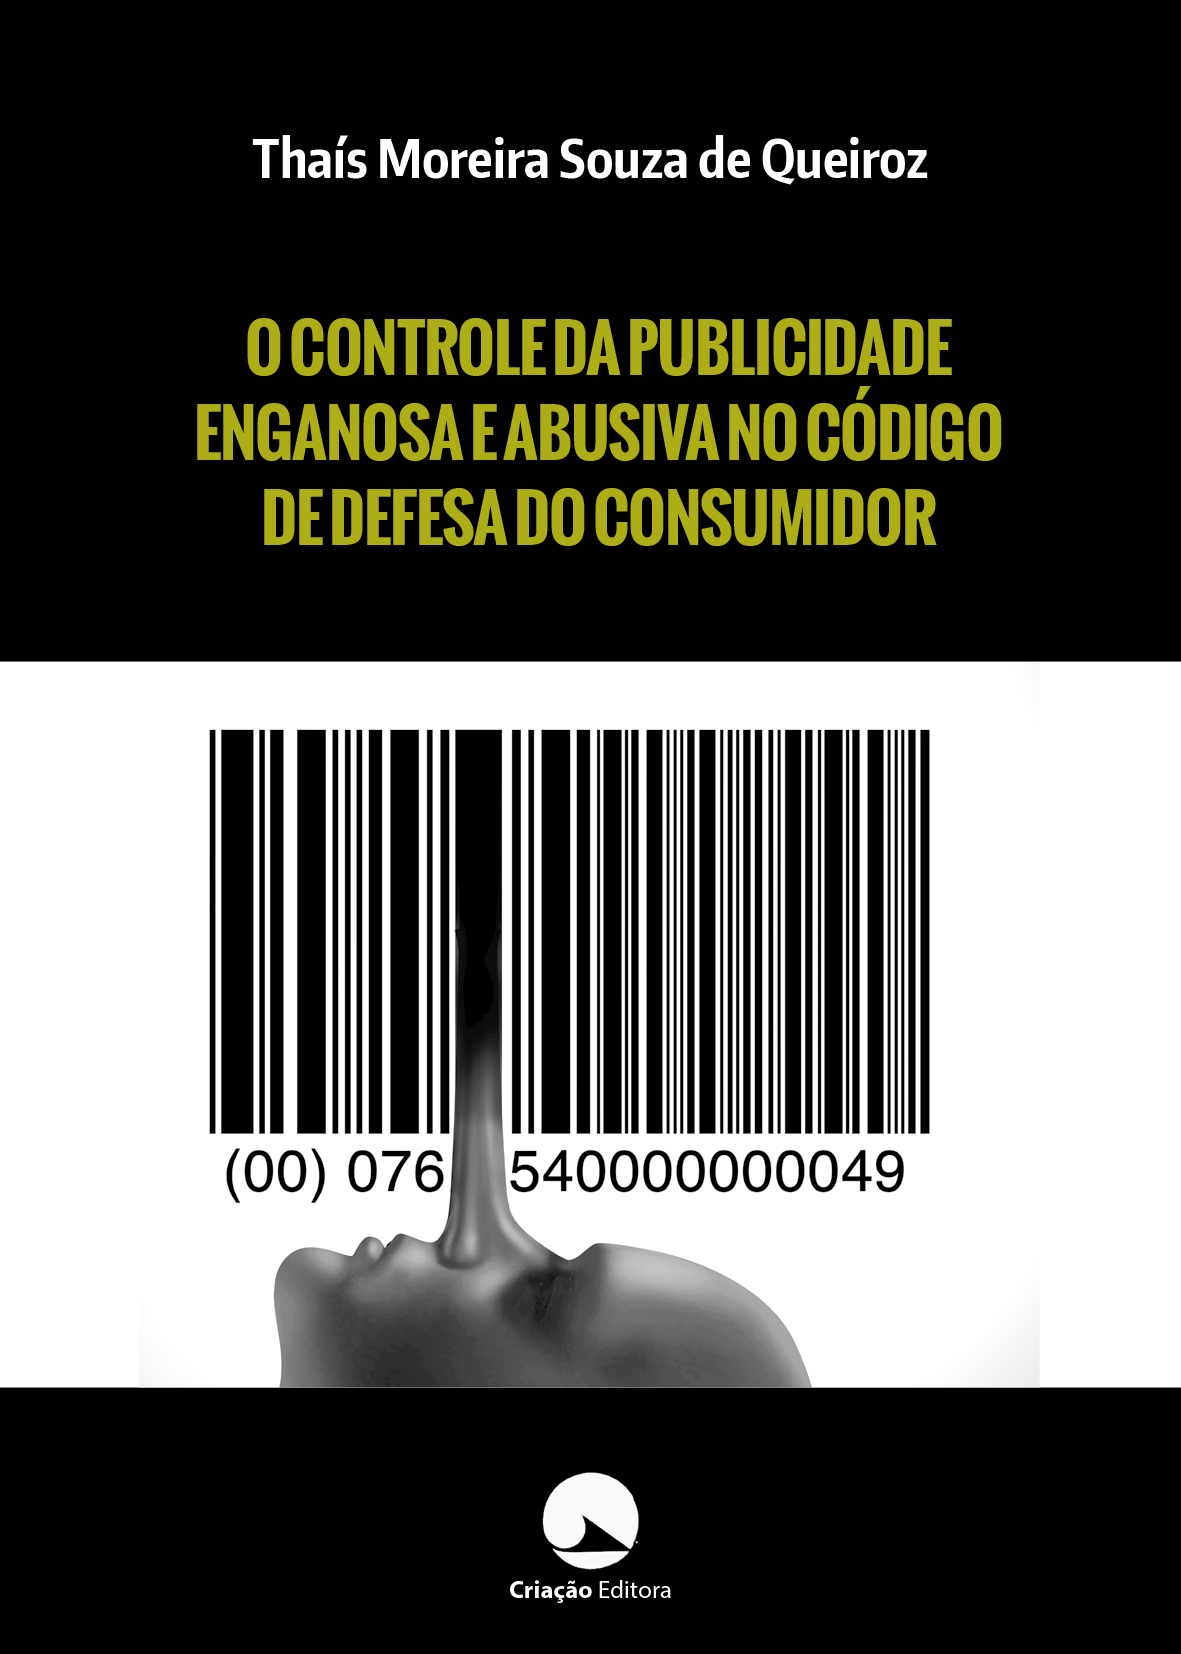 O CONTROLE DA PUBLICIDADE ENGANOSA E ABUSIVA NO CÓDIGO DE DEFESA DO CONSUMIDOR